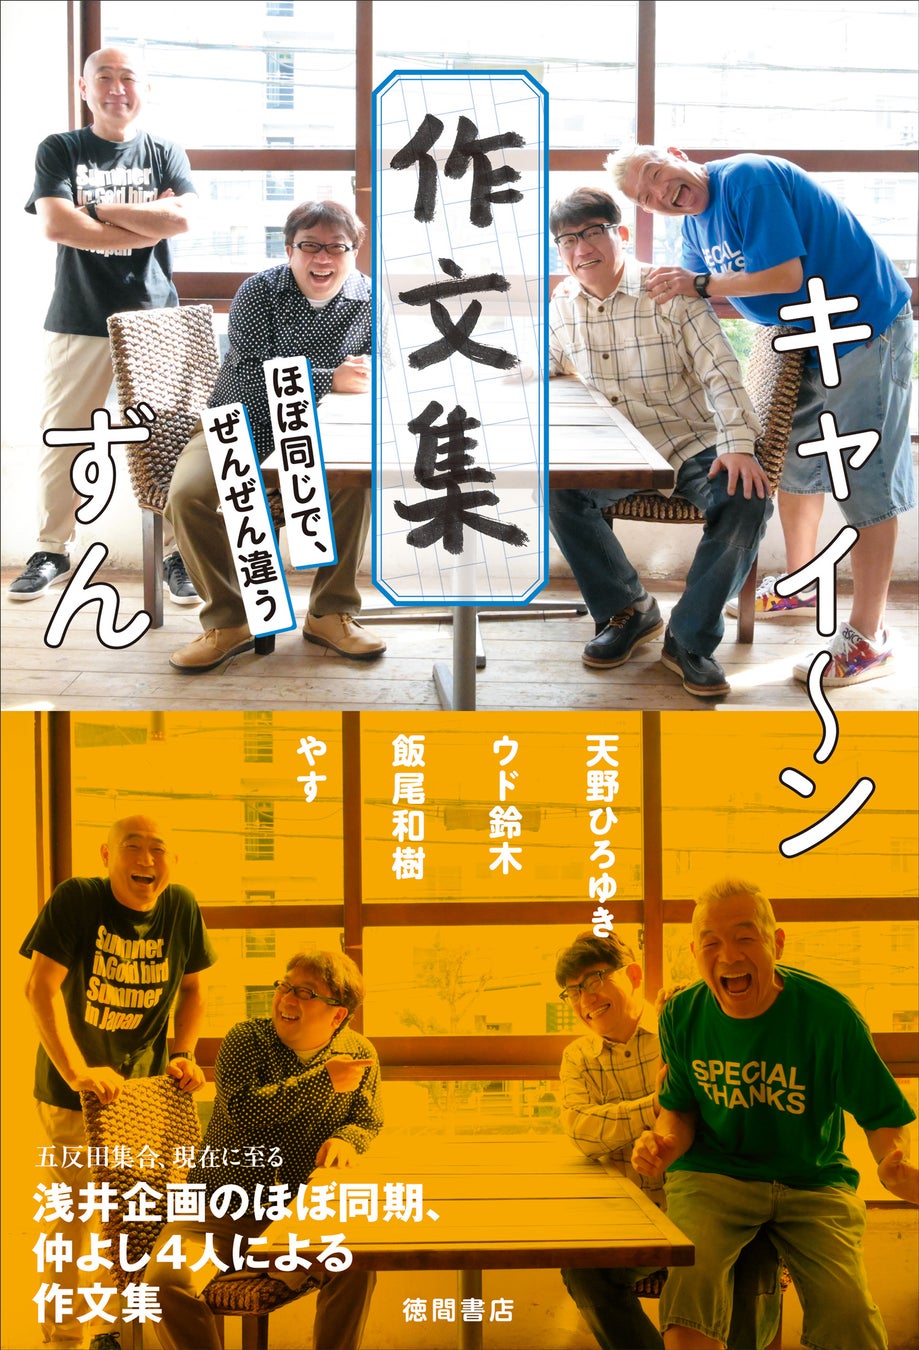 １０９シネマズ大阪エキスポシティで5月17日(金)～1週間限定『YUKIHIRO TAKAHASHI LIVE 2018 SARAVAH SARAVAH!』上映決定